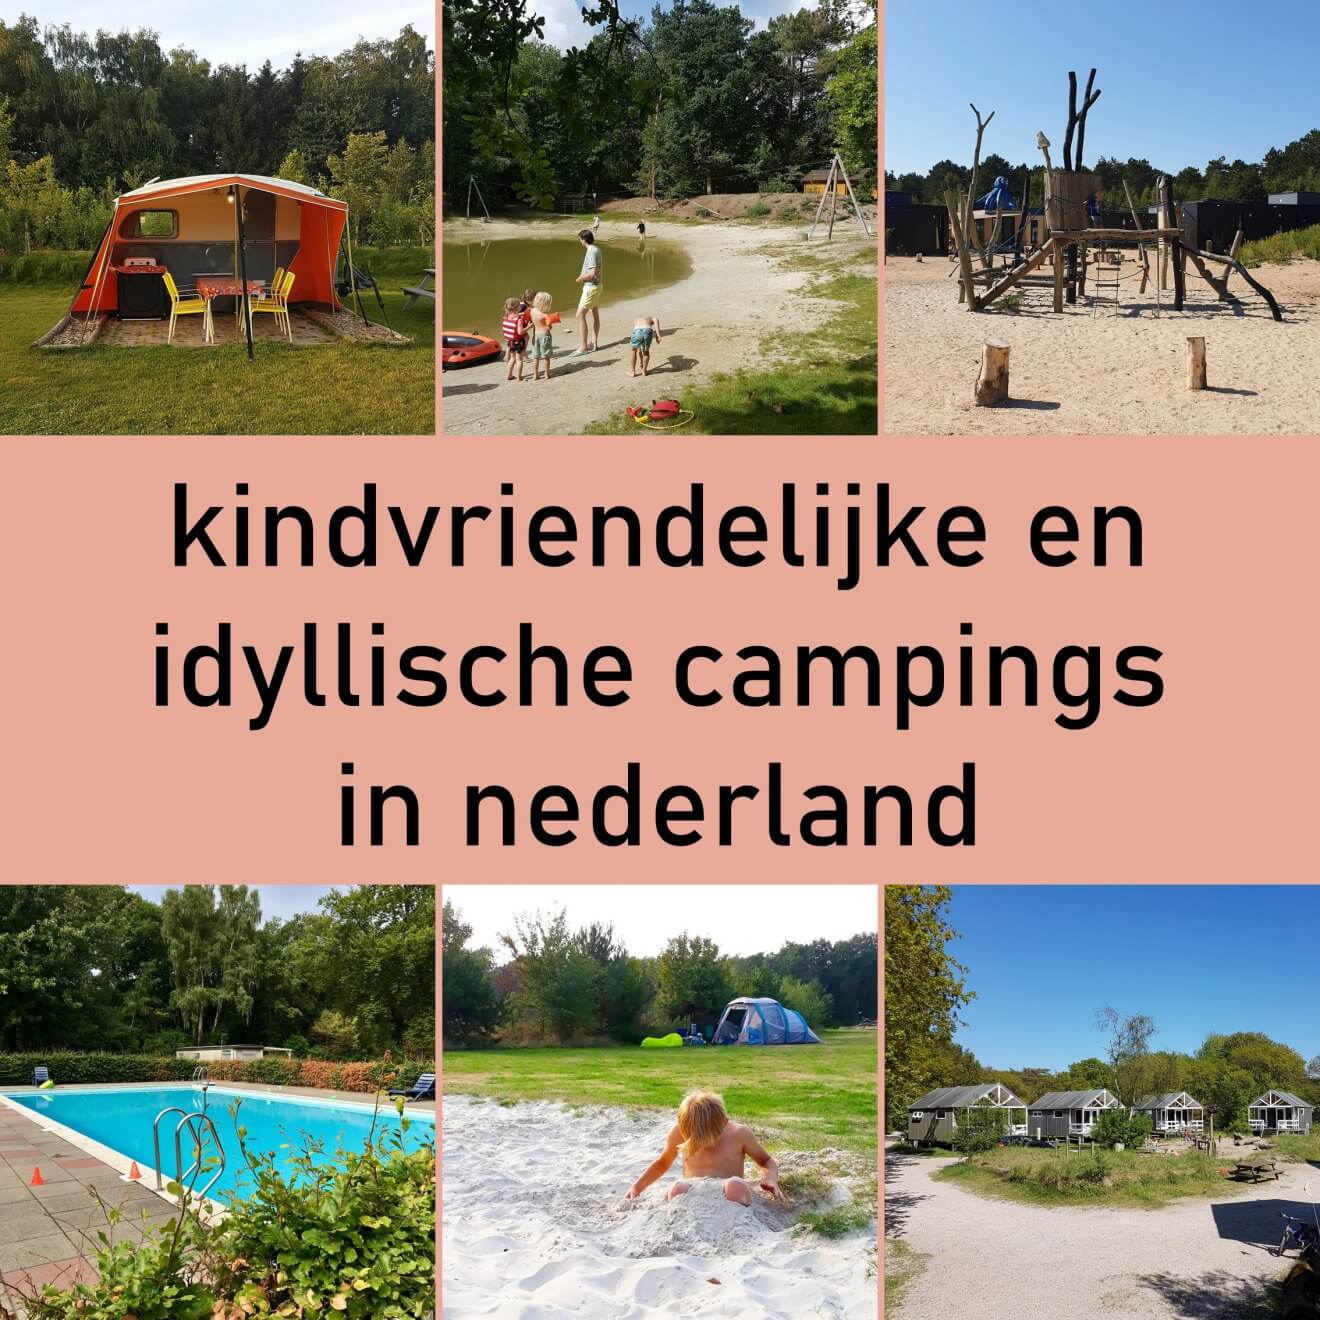 101 kleine kindvriendelijke campings in Nederland. Kamperen met kinderen is hartstikke leuk. Ze rennen de hele dag buiten rond met andere kinderen. Ik heb wel vrij specifieke eisen over wat ik leuk vind. Een idyllische kindercamping zonder massavermaak, met leuke faciliteiten voor kinderen en waar je bij voorkeur ook kunt zwemmen. Daarom vind je in dit artikel een heleboel leuke idyllische kindvriendelijke campings in Nederland. Plekken die leuk zijn voor kinderen en ouders.